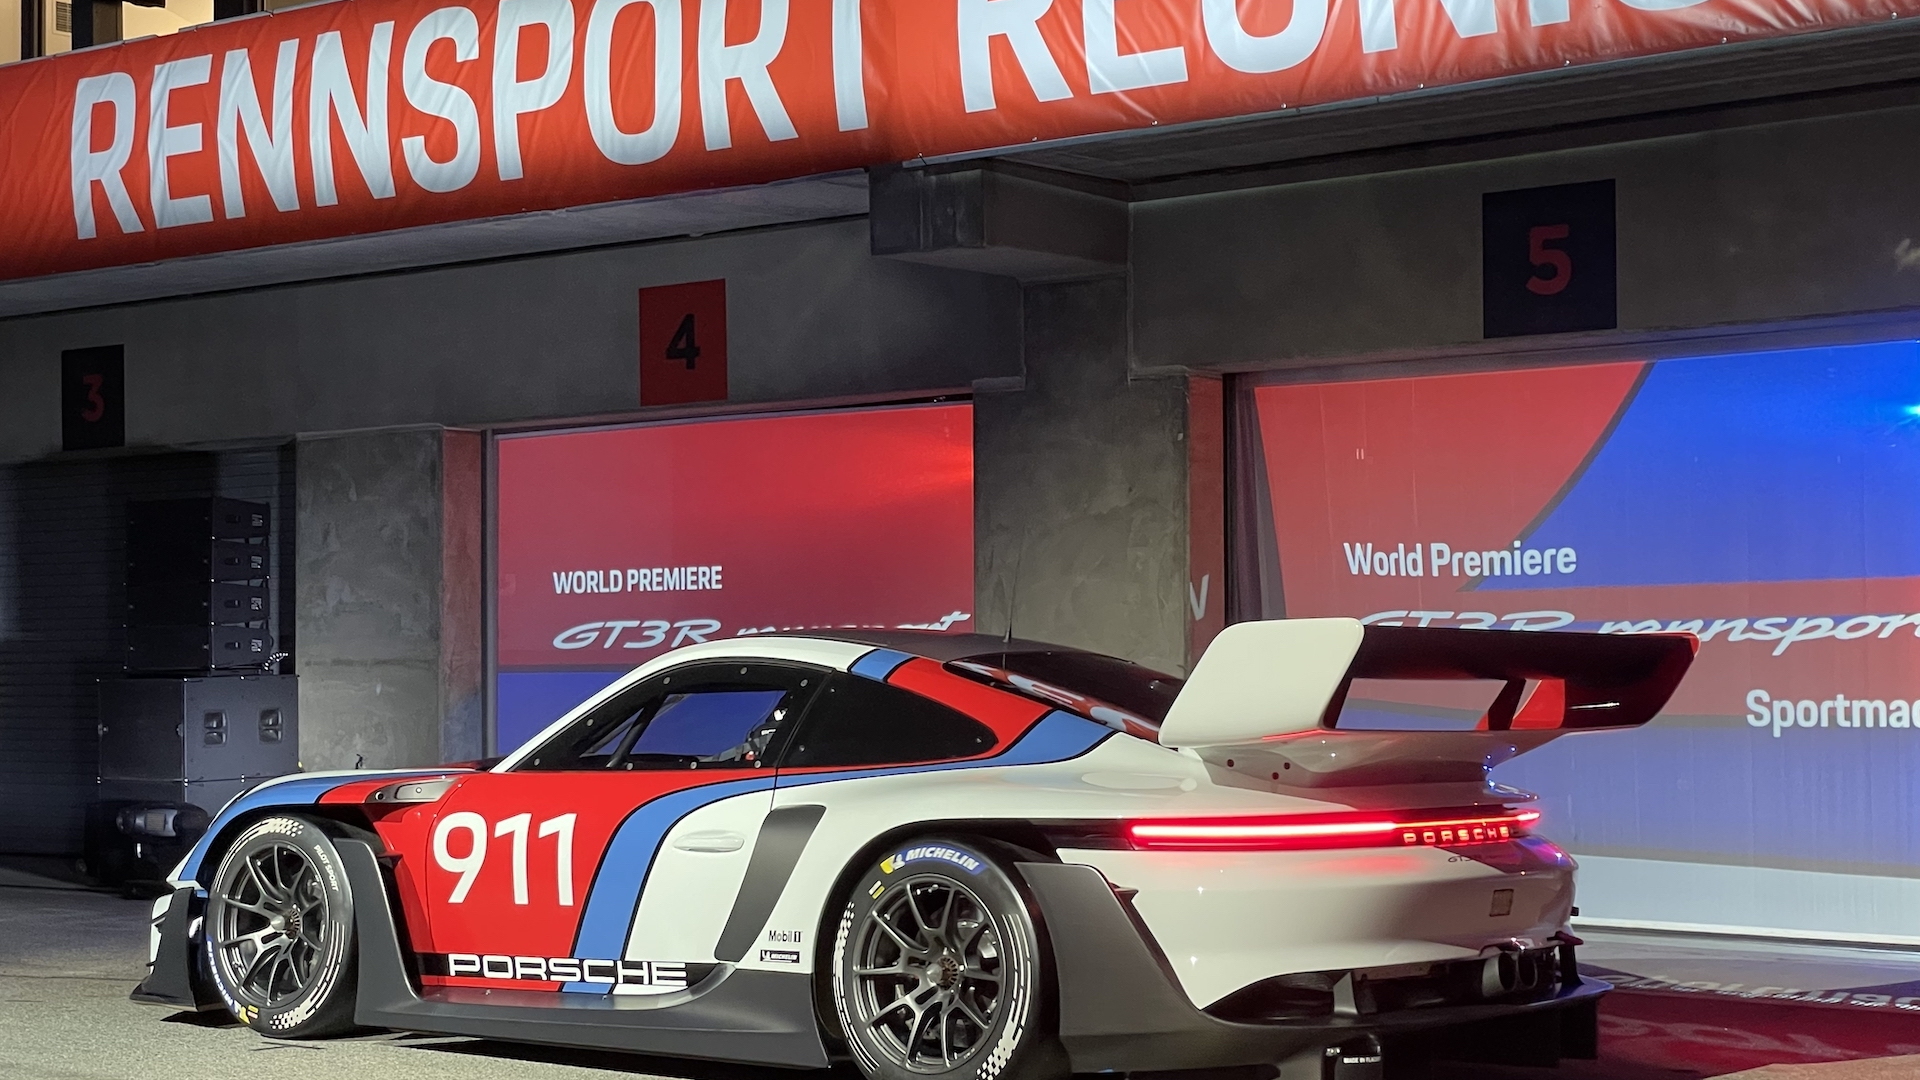 Porsche Mission R premiers in RENNSPORT — RENNSPORT